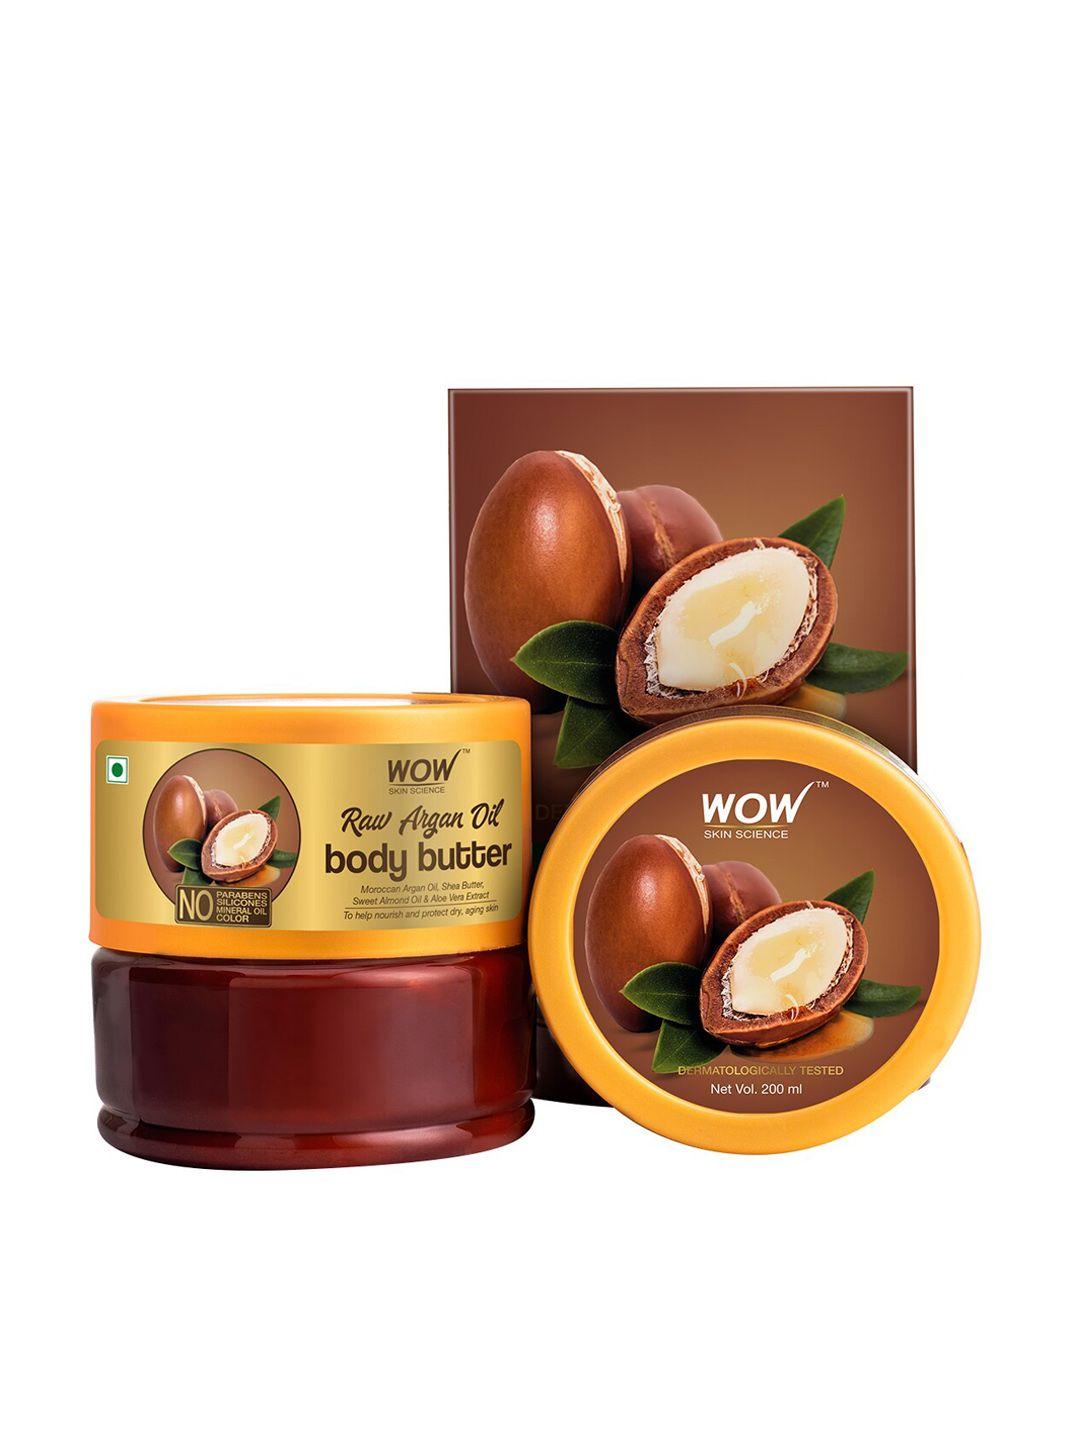 wow skin science raw argan oil body butter 200ml